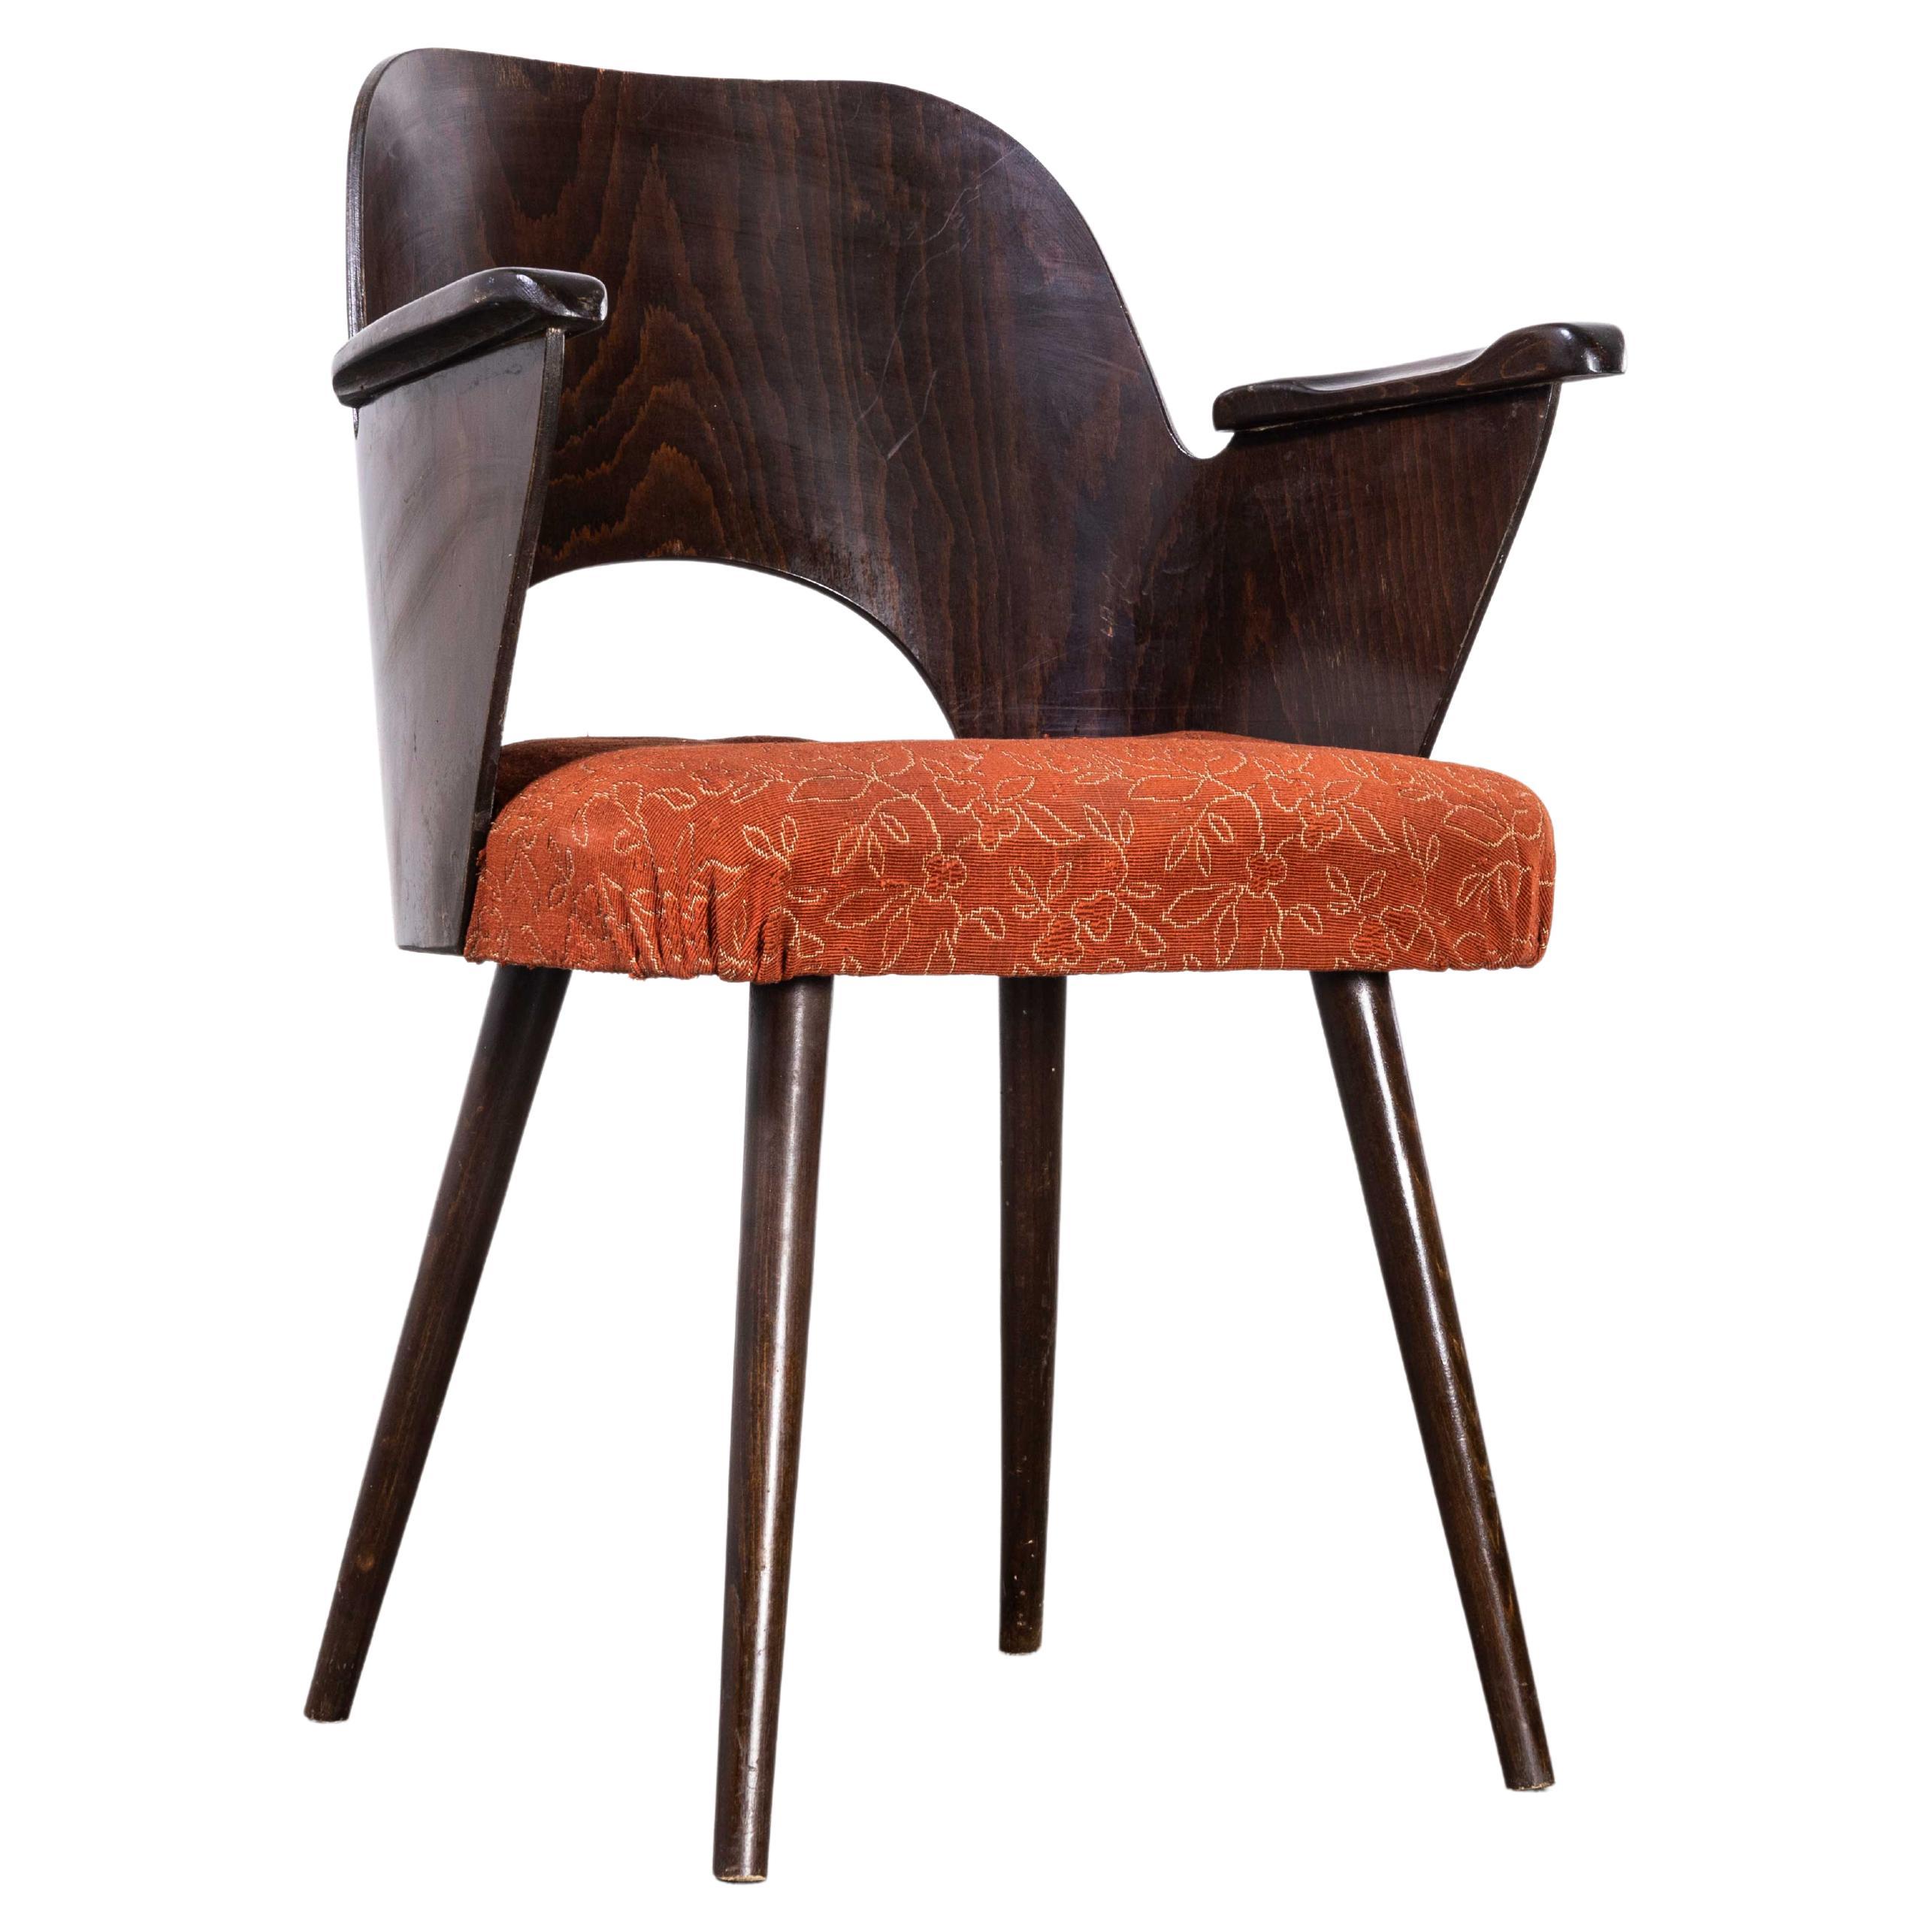 1950's Dark Walnut Upholstered Side Chair, Oswald Haerdt Model 515 '1923' For Sale